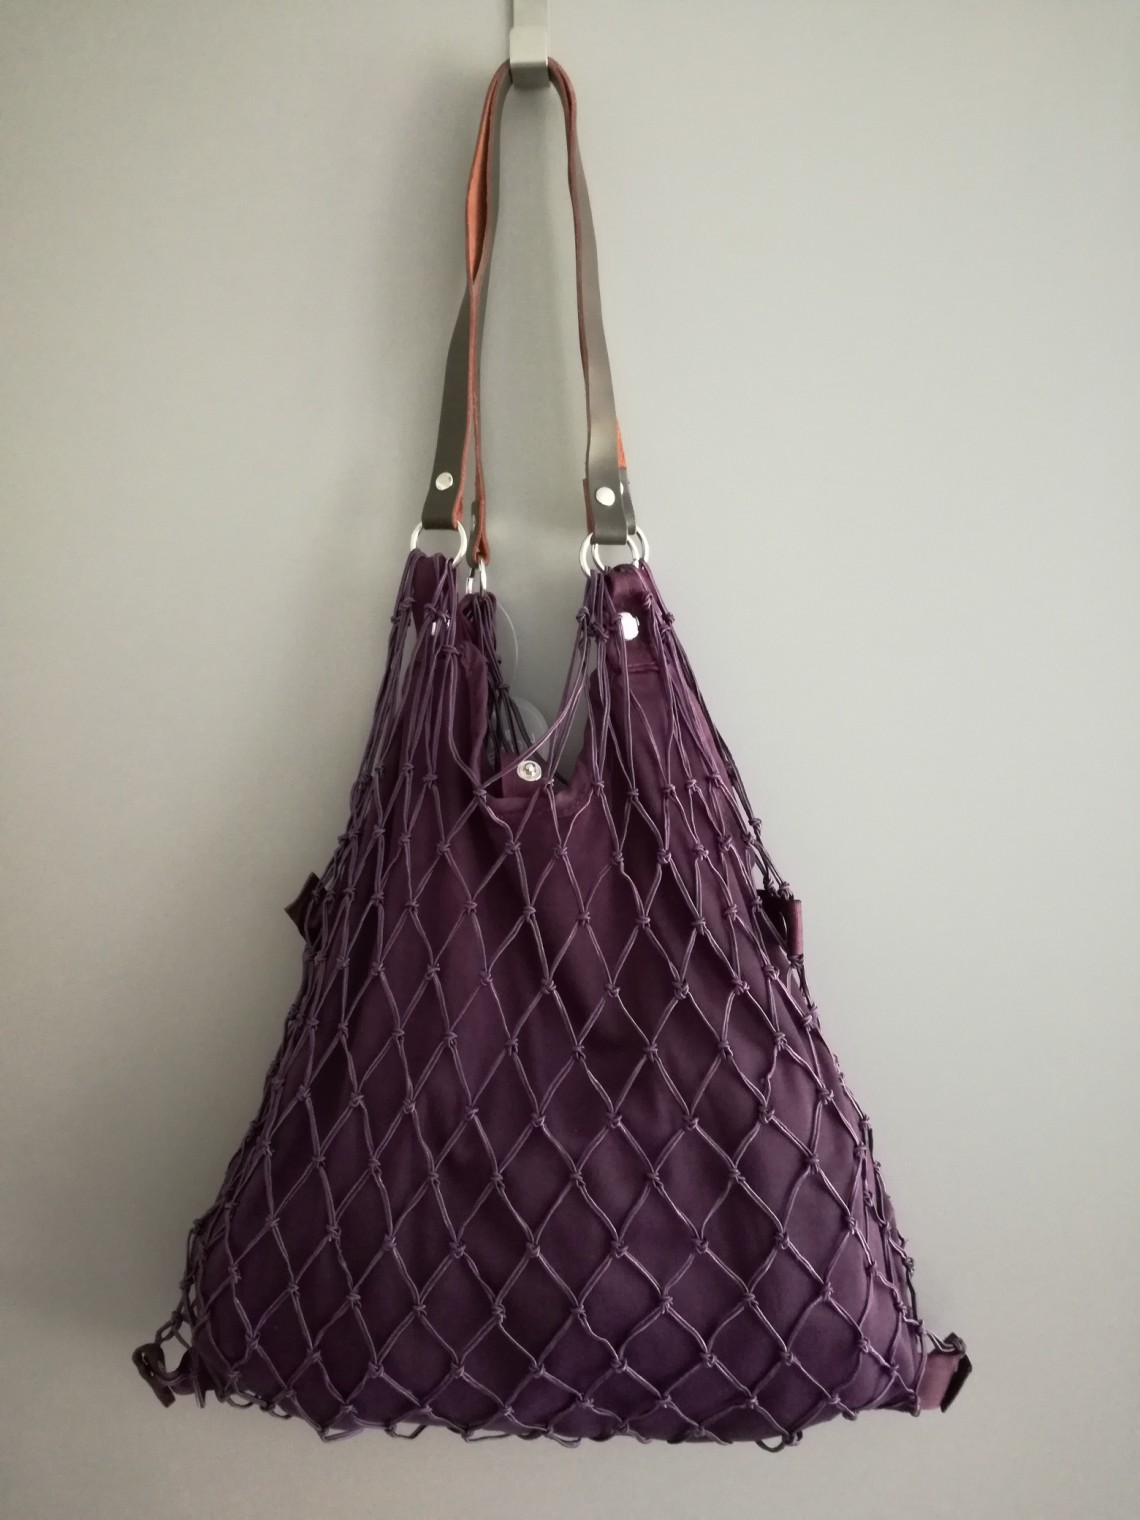 Tinklinis krepšys su įsegamu ir išsegamu tampriu audiniu violetinės spalvos - 2016902 de luxe violet. Kaina 19,90 €.